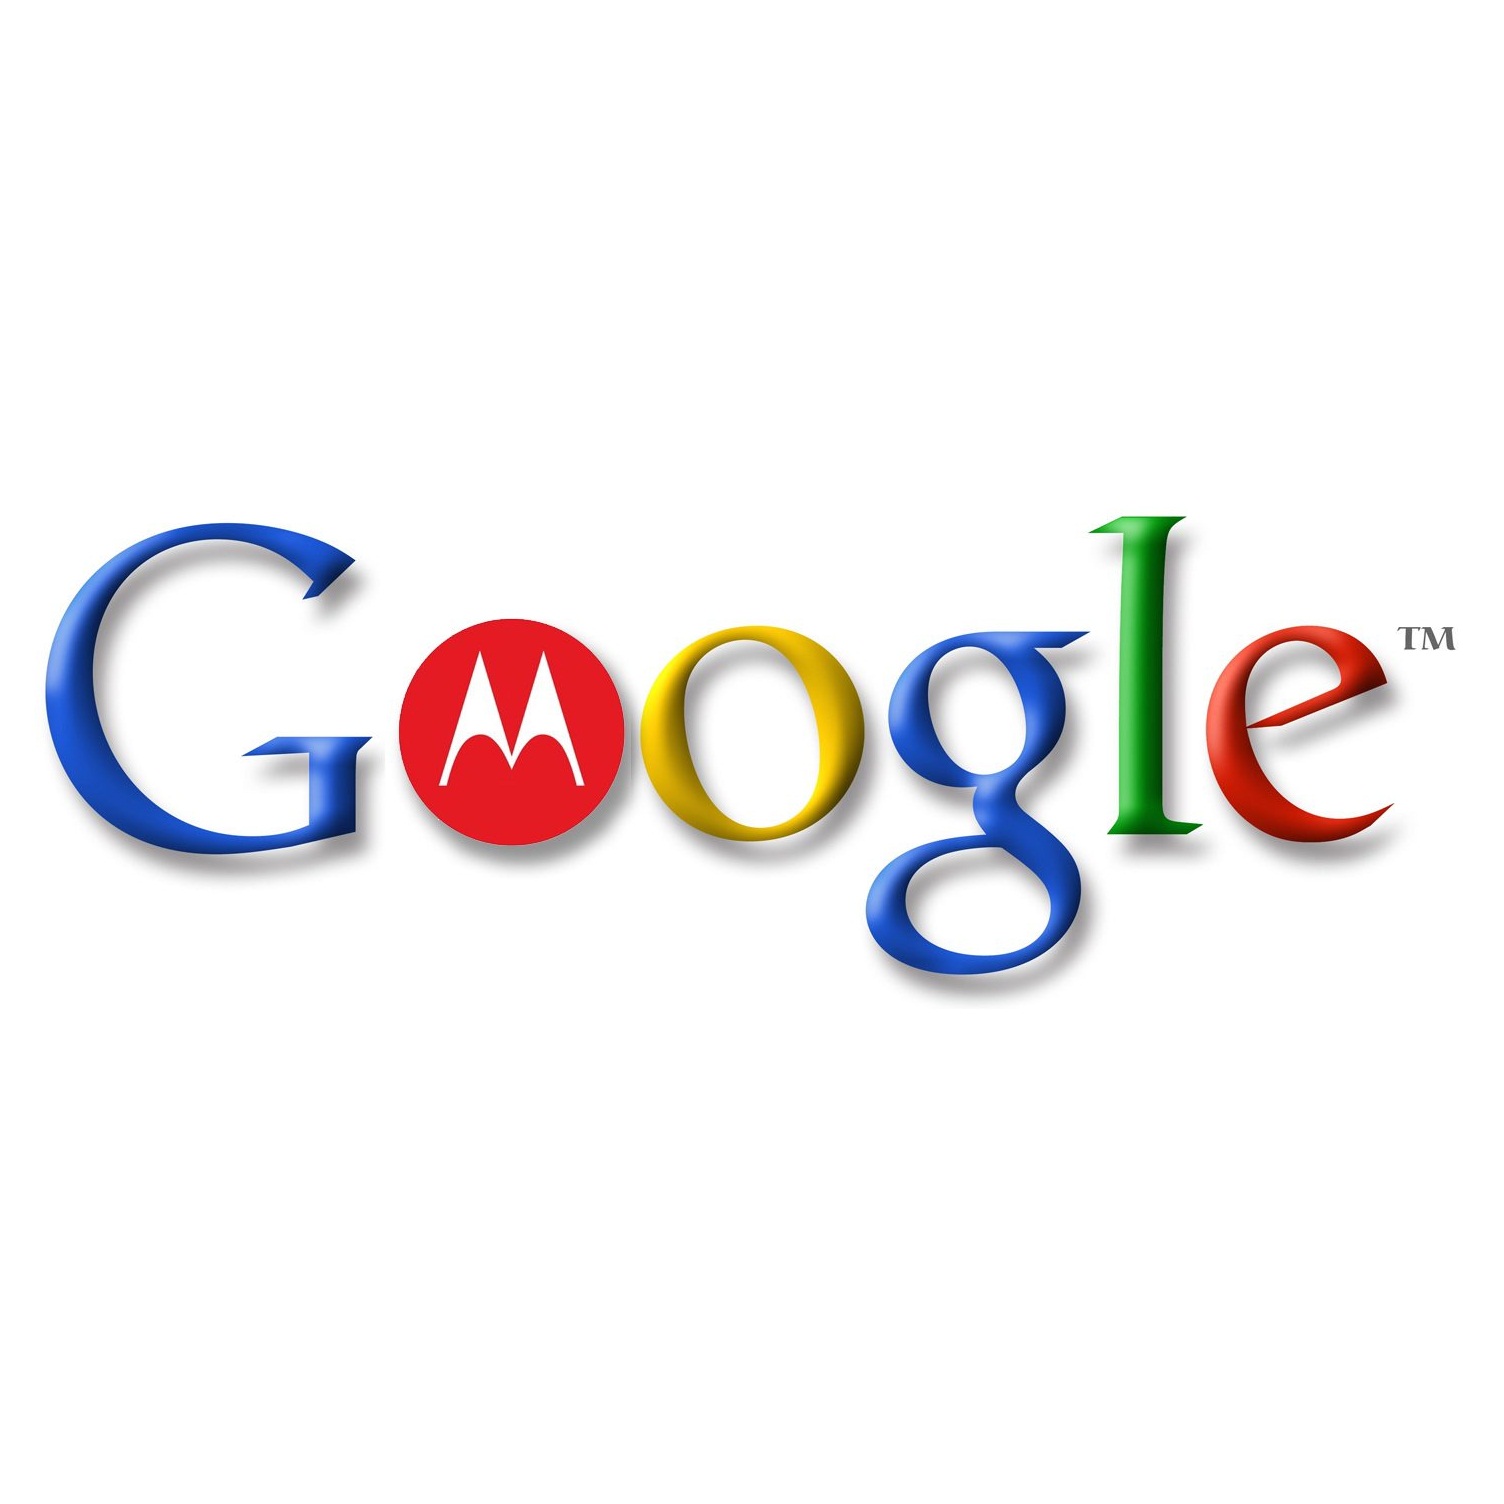 Миналата година Google купи Motorola Mobility, като основният мотив бе именно патентното й портфолио